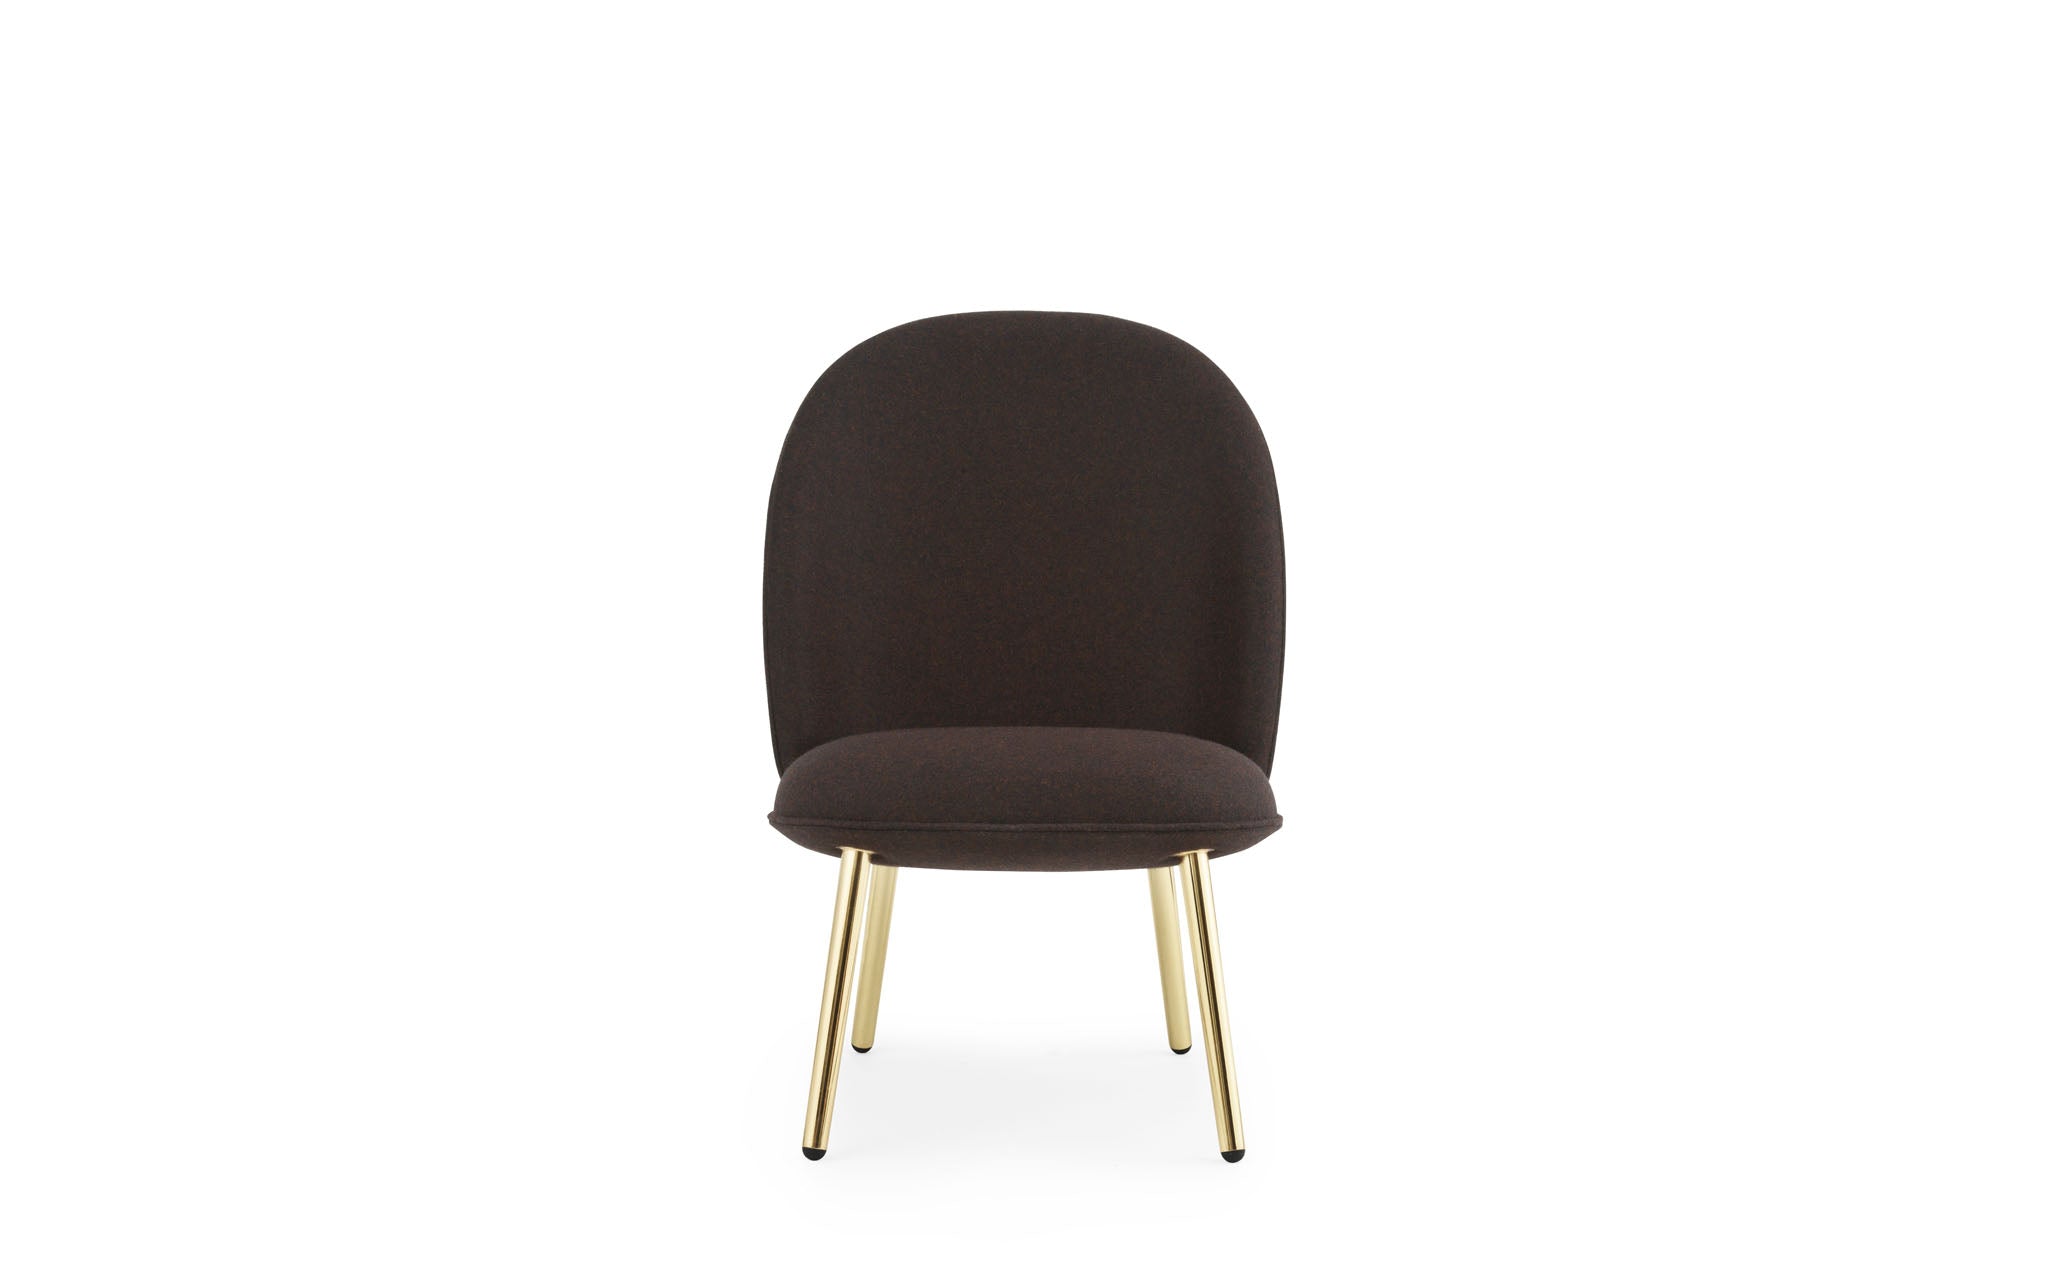 Ace Lounge-Sessel, gepolstert - KAQTU Design